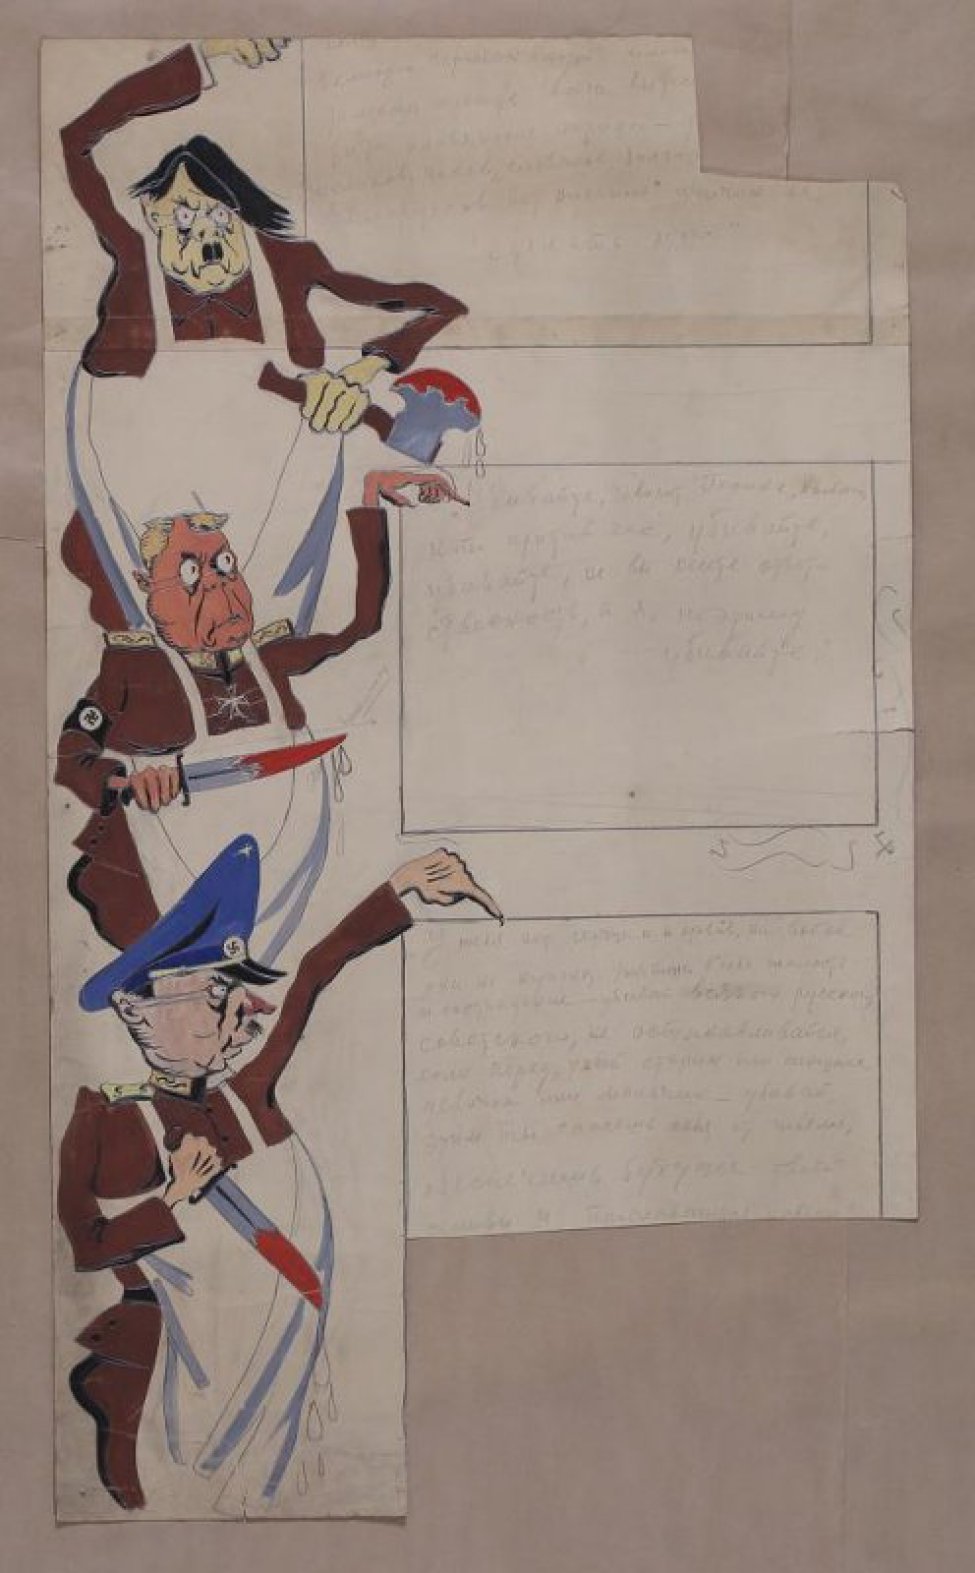 В левой части листа изображены трое мужчин в коричневых мундирах один под другим; в руках одного окровавленный топор, у двоих окровавленные кинжалы.